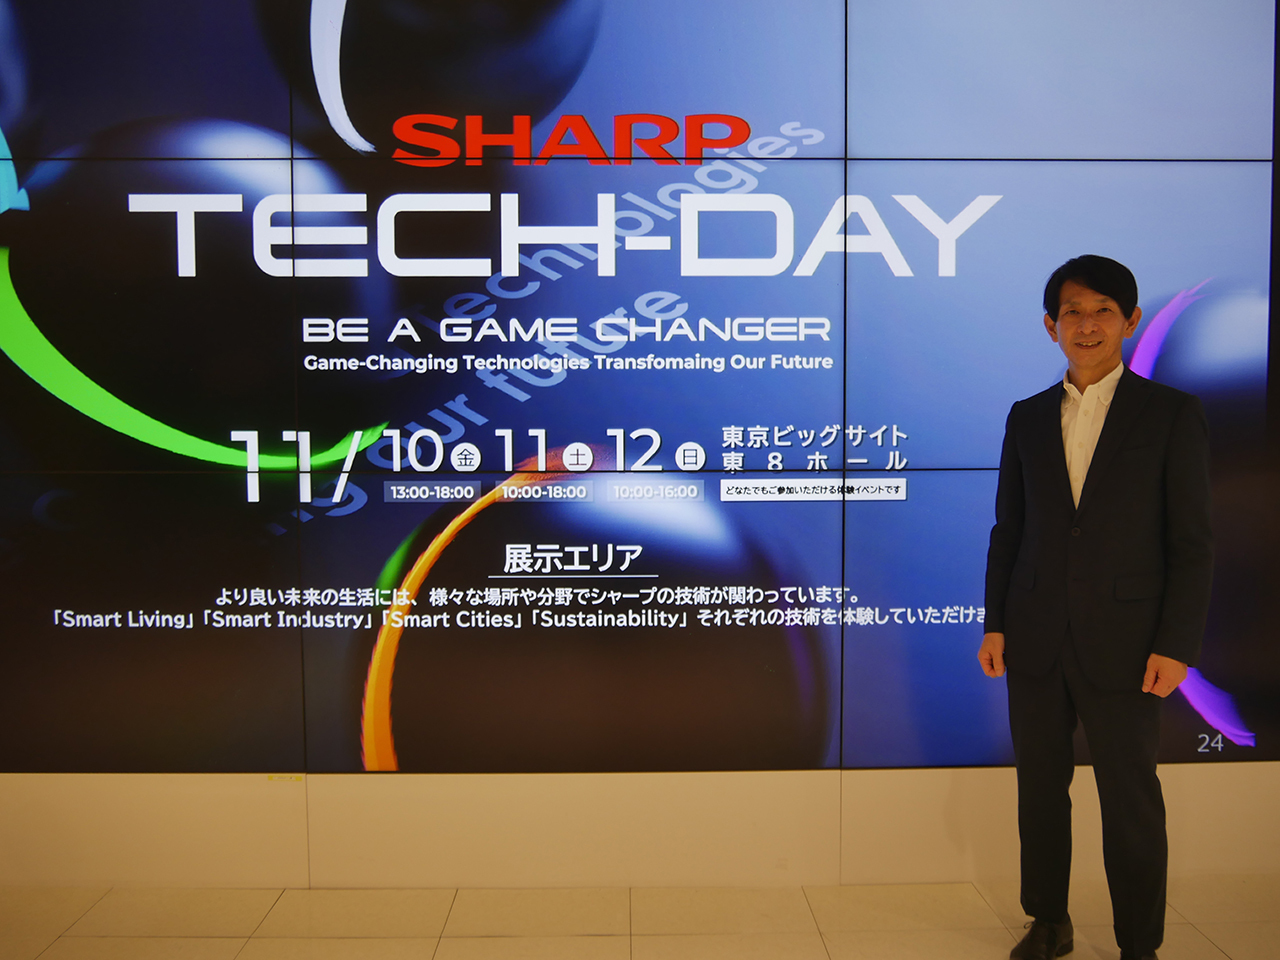 創立111周年記念イベント「SHARP Tech-Day」を、11月10〜12日までの3日間、東京・有明の東京ビッグサイト東8ホールで開催する